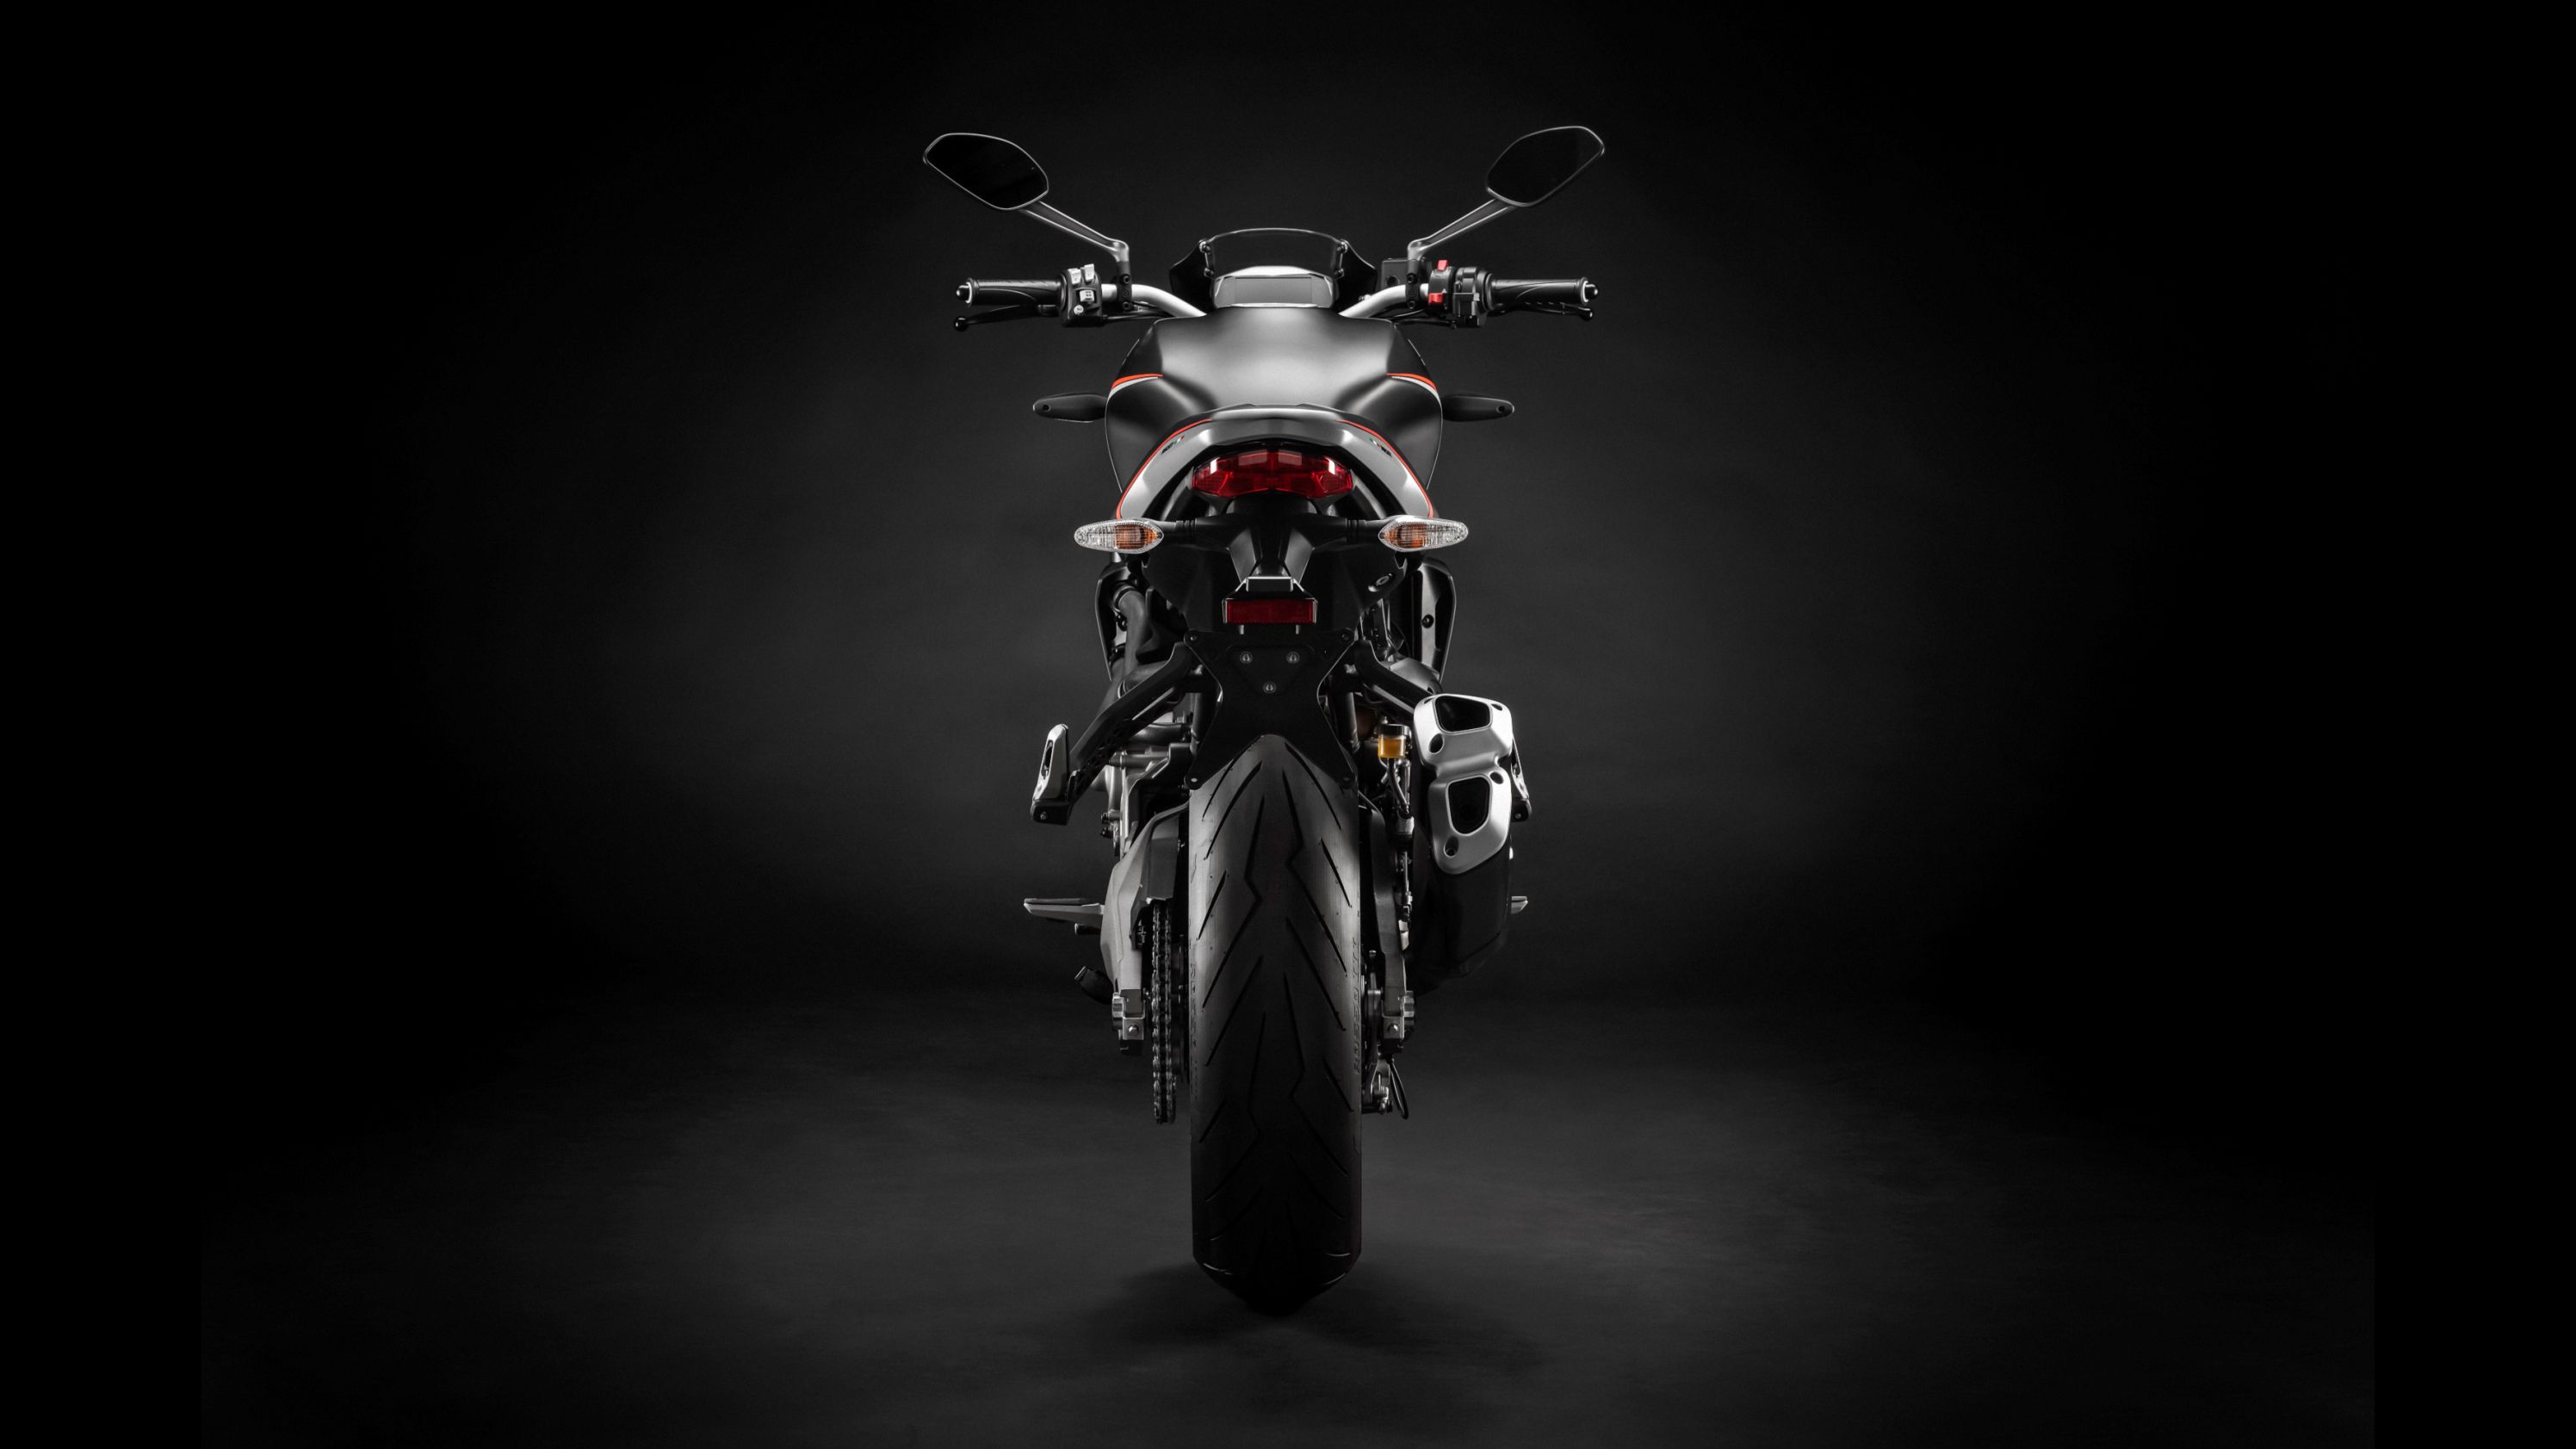 2019 - 2020 Ducati Monster 821 Stealth